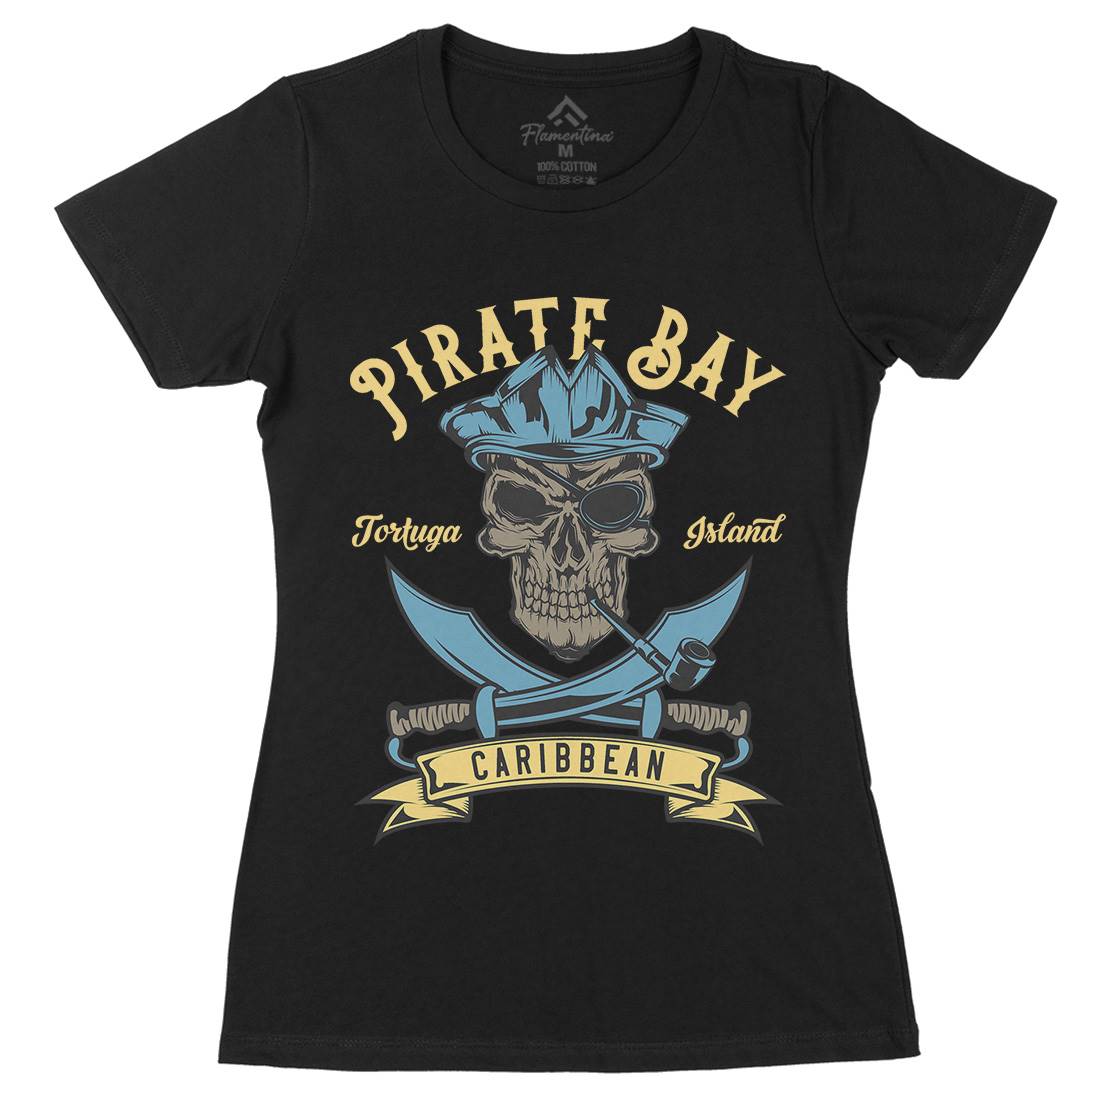 Pirate Womens Organic Crew Neck T-Shirt Navy B165